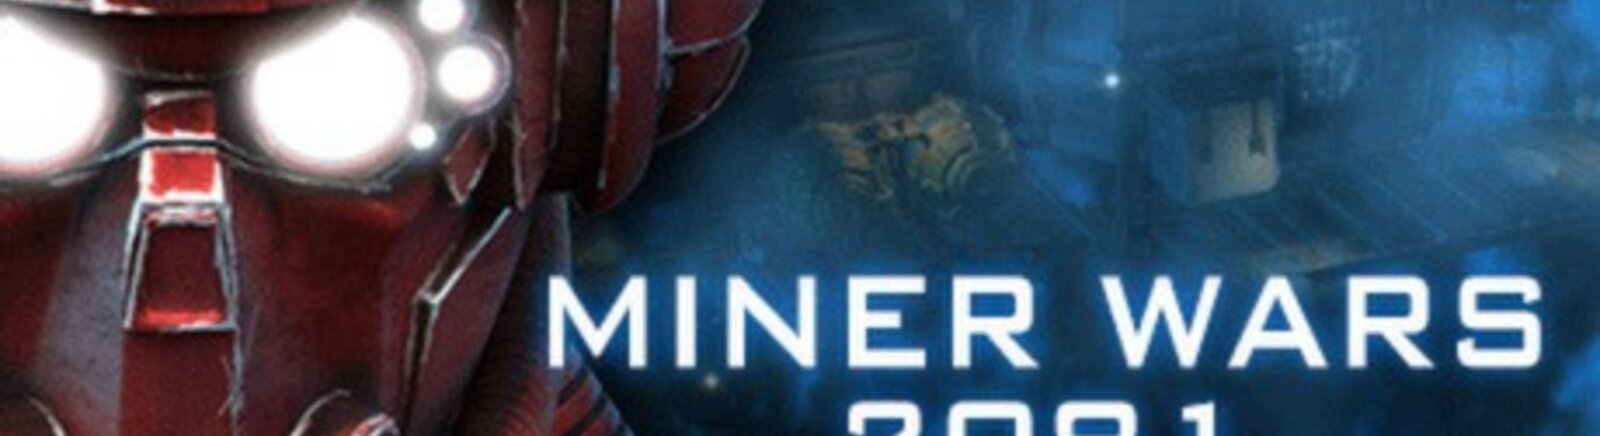 Дата выхода Miner Wars 2081 (Miner Wars)  на PC и Xbox 360 в России и во всем мире